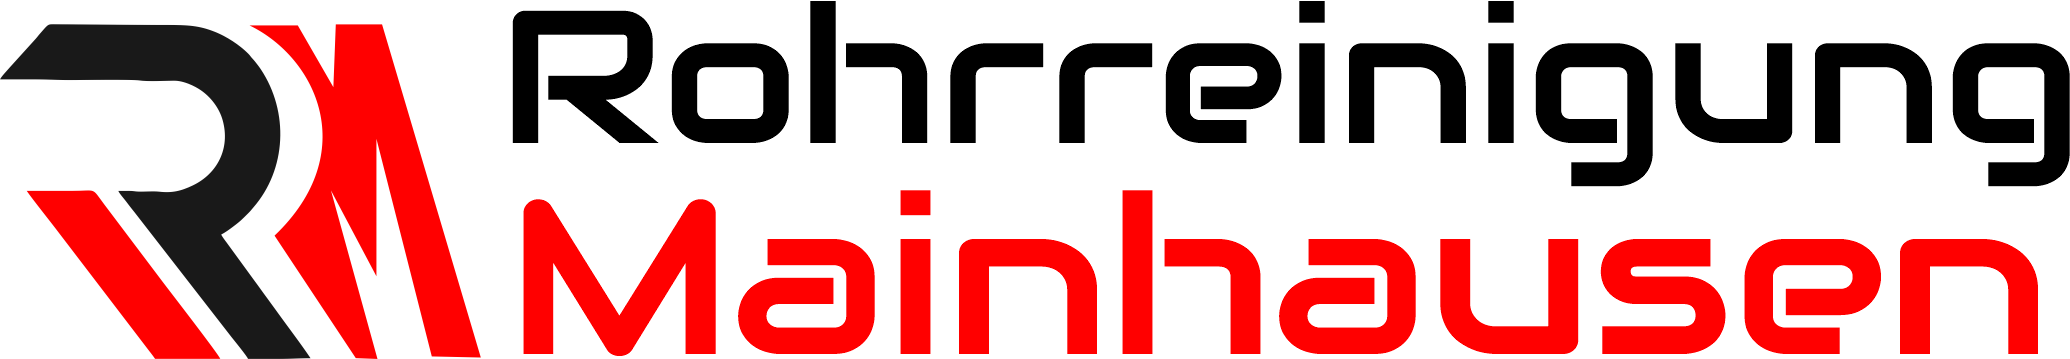 Rohrreinigung Mainhausen Logo